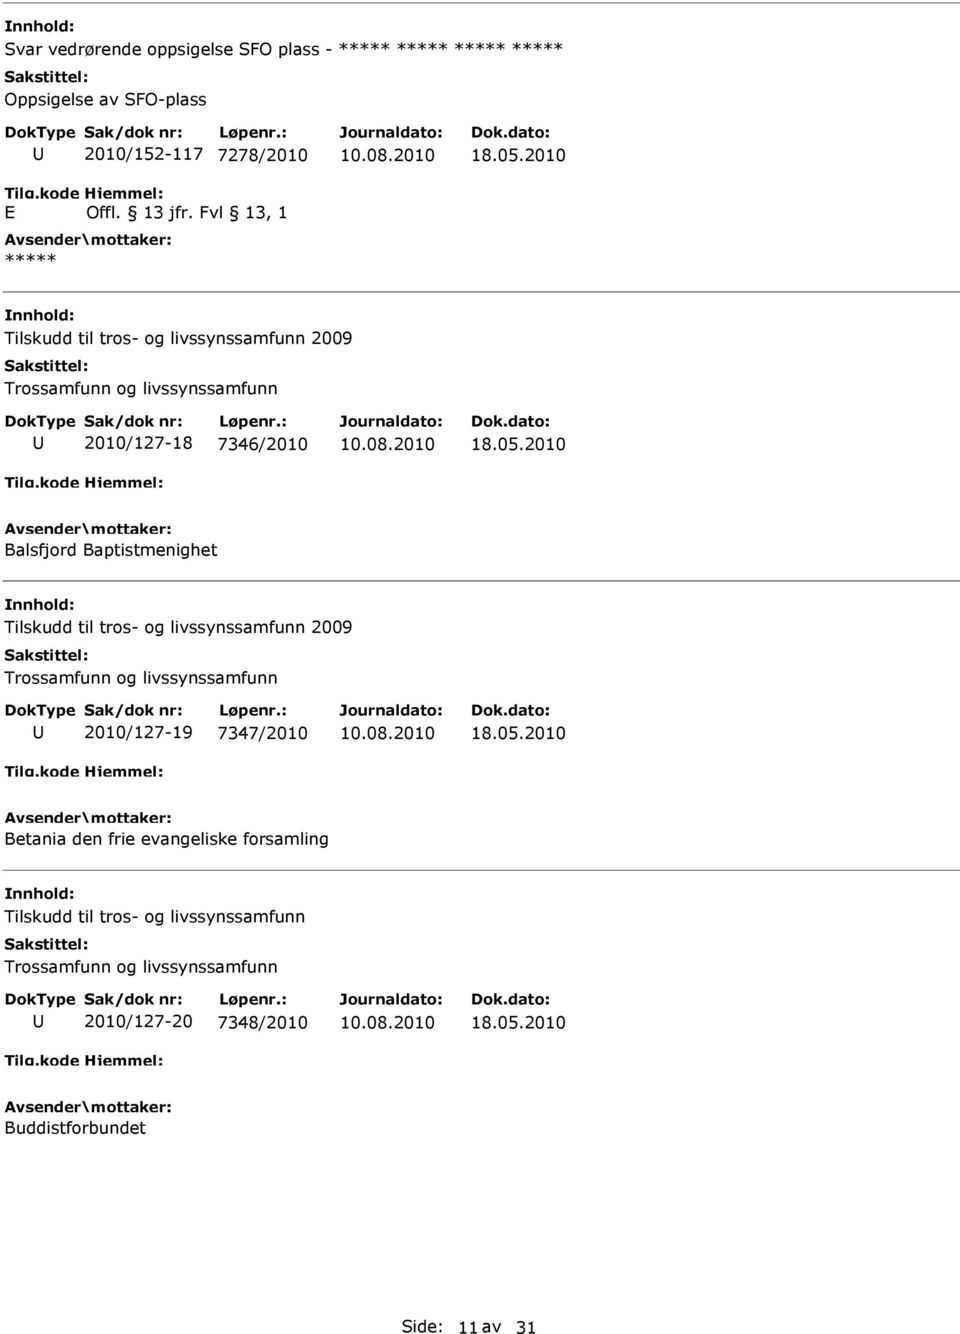 2010 Balsfjord Baptistmenighet Tilskudd til tros- og livssynssamfunn 2009 Trossamfunn og livssynssamfunn 2010/127-19